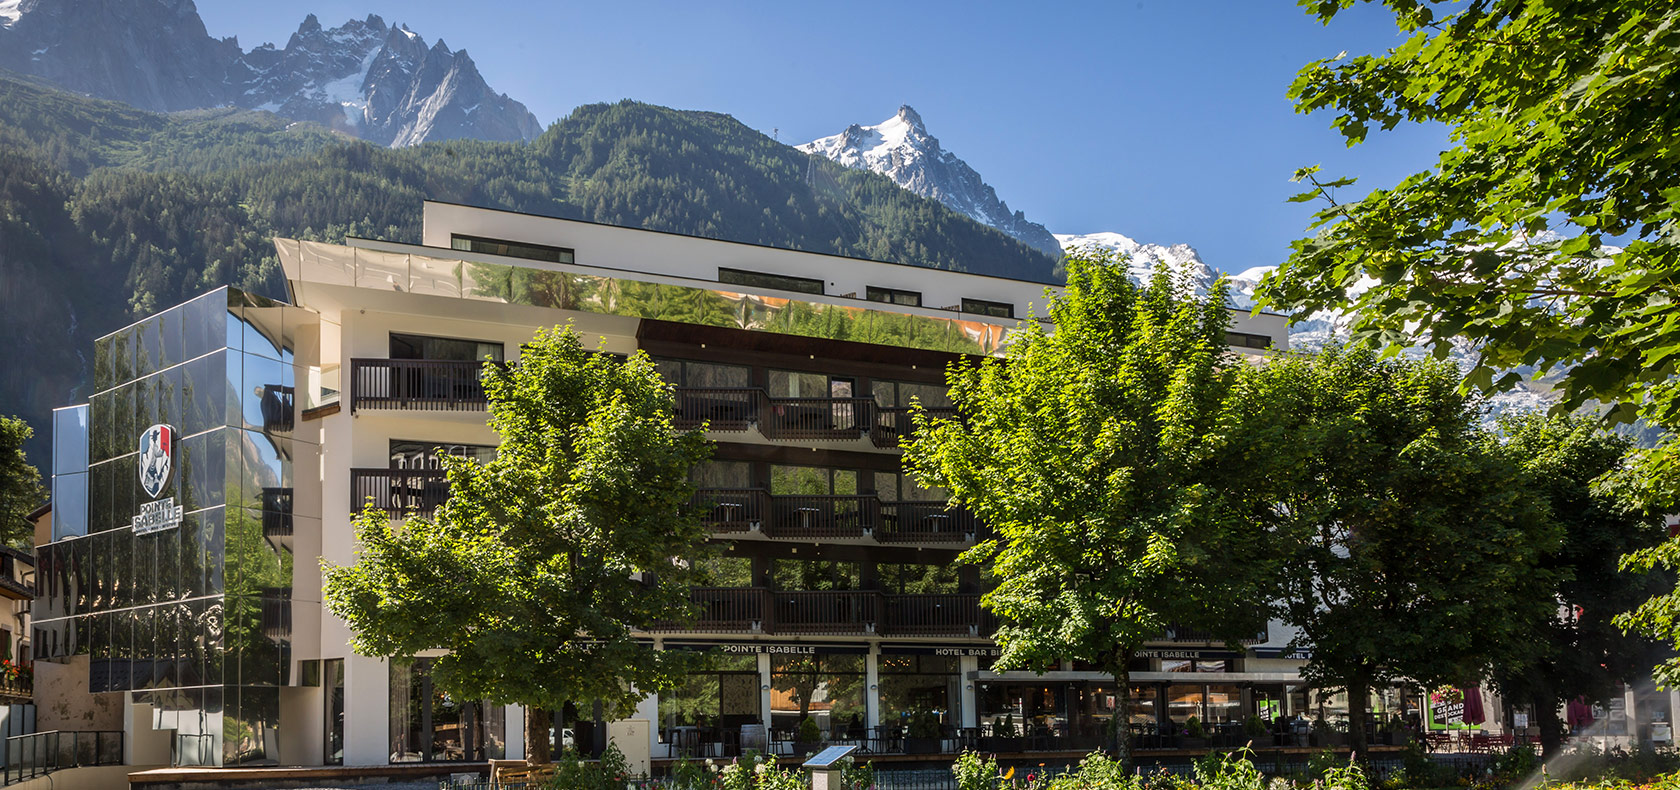 Hotel Bar Bistro Pointe Isabelle Chamonix Mont-Blanc